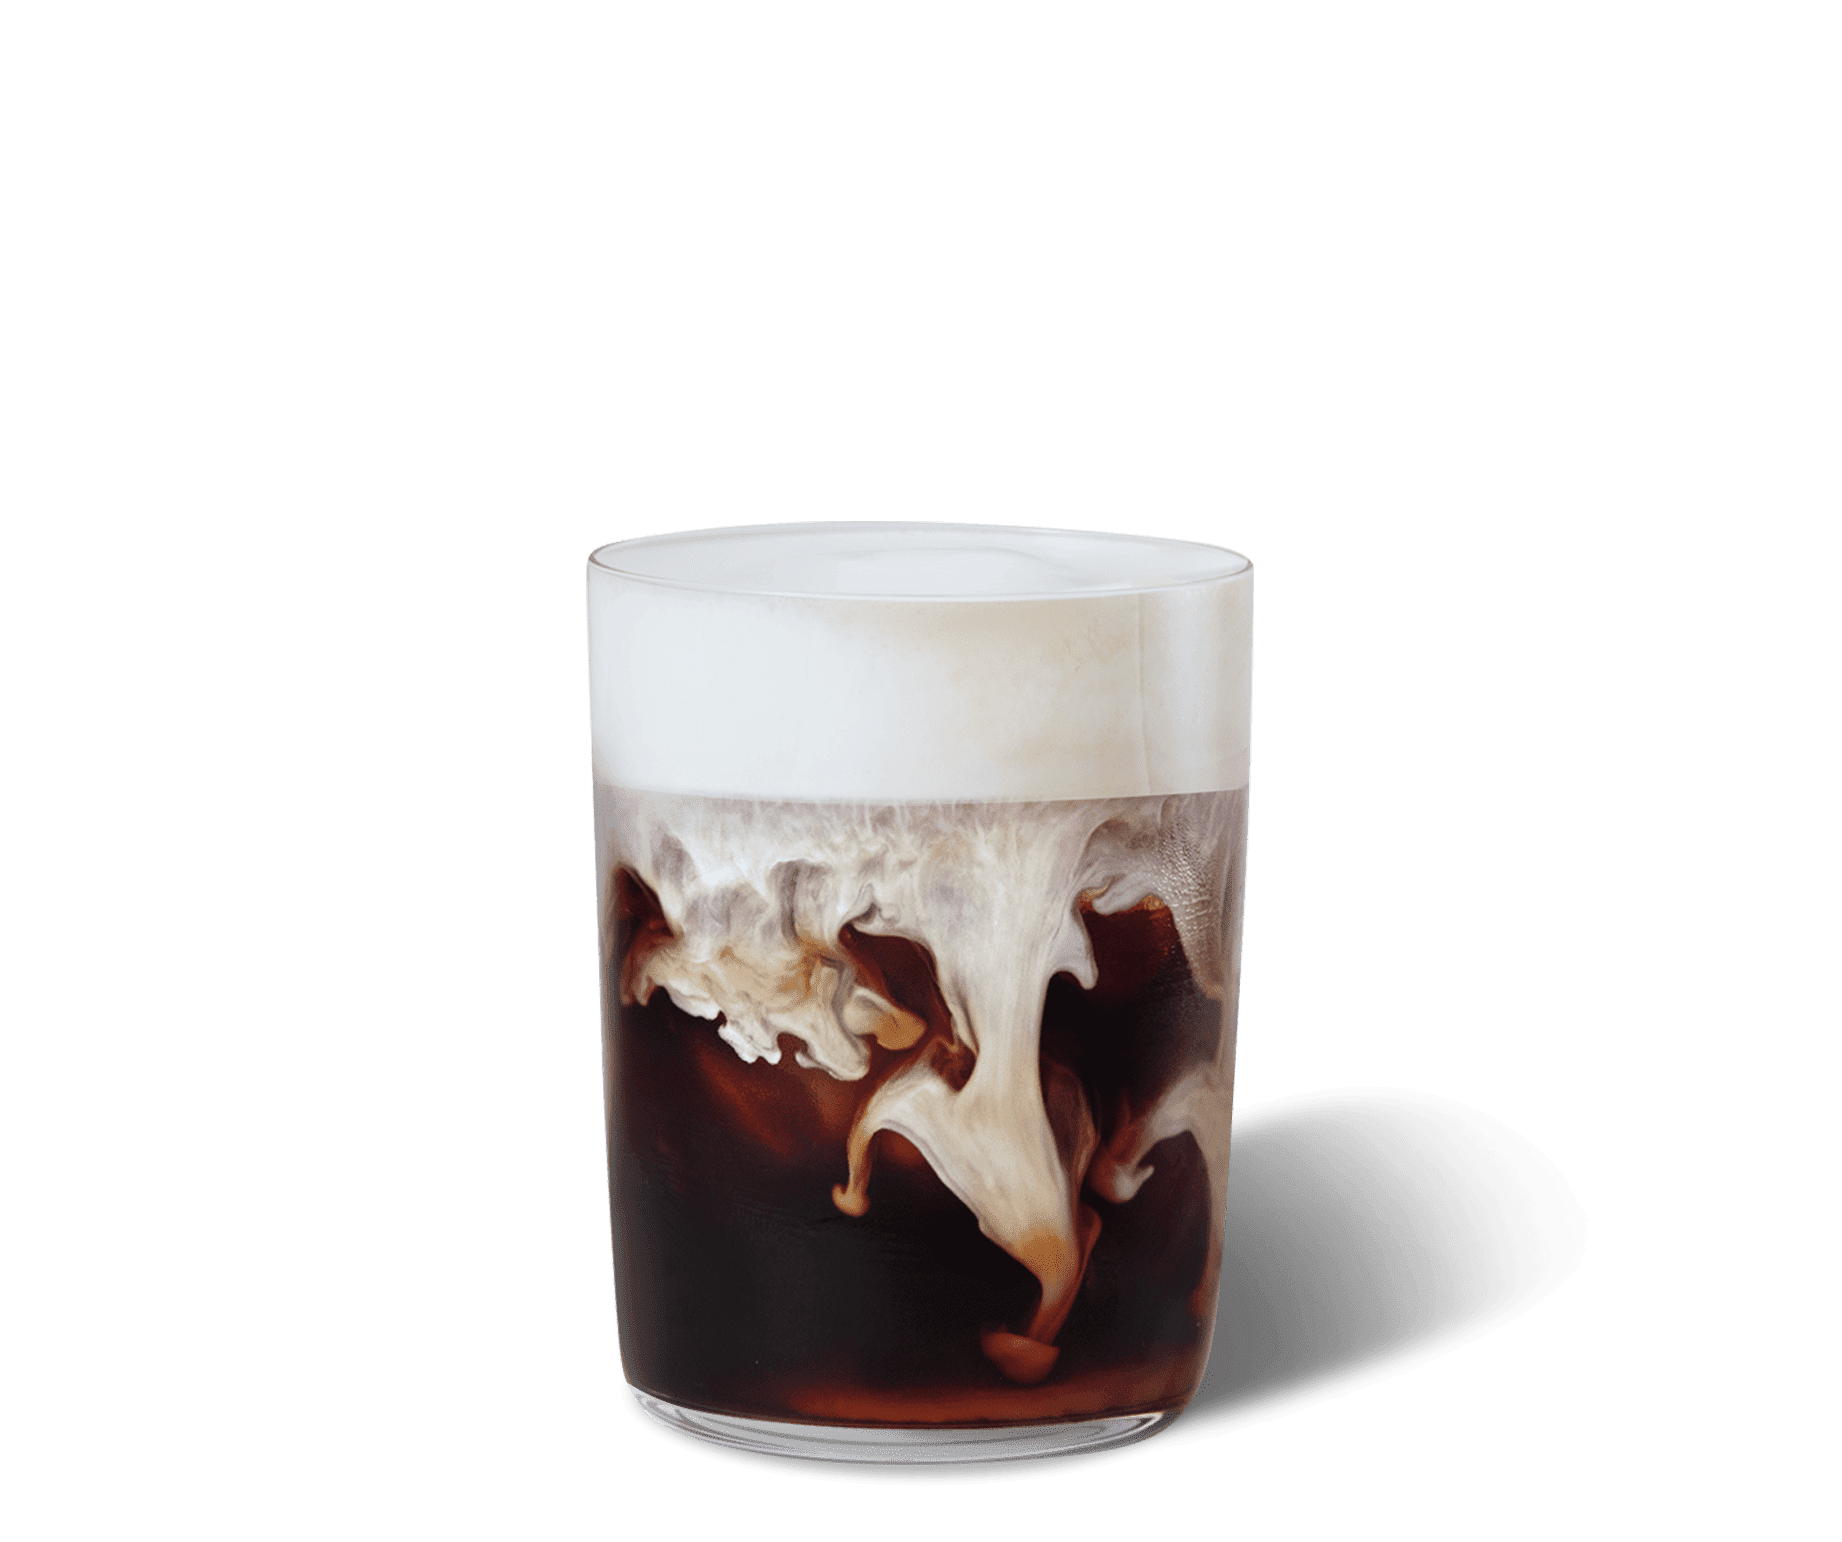 Iced Caramel Latte & Vanille Slagroom